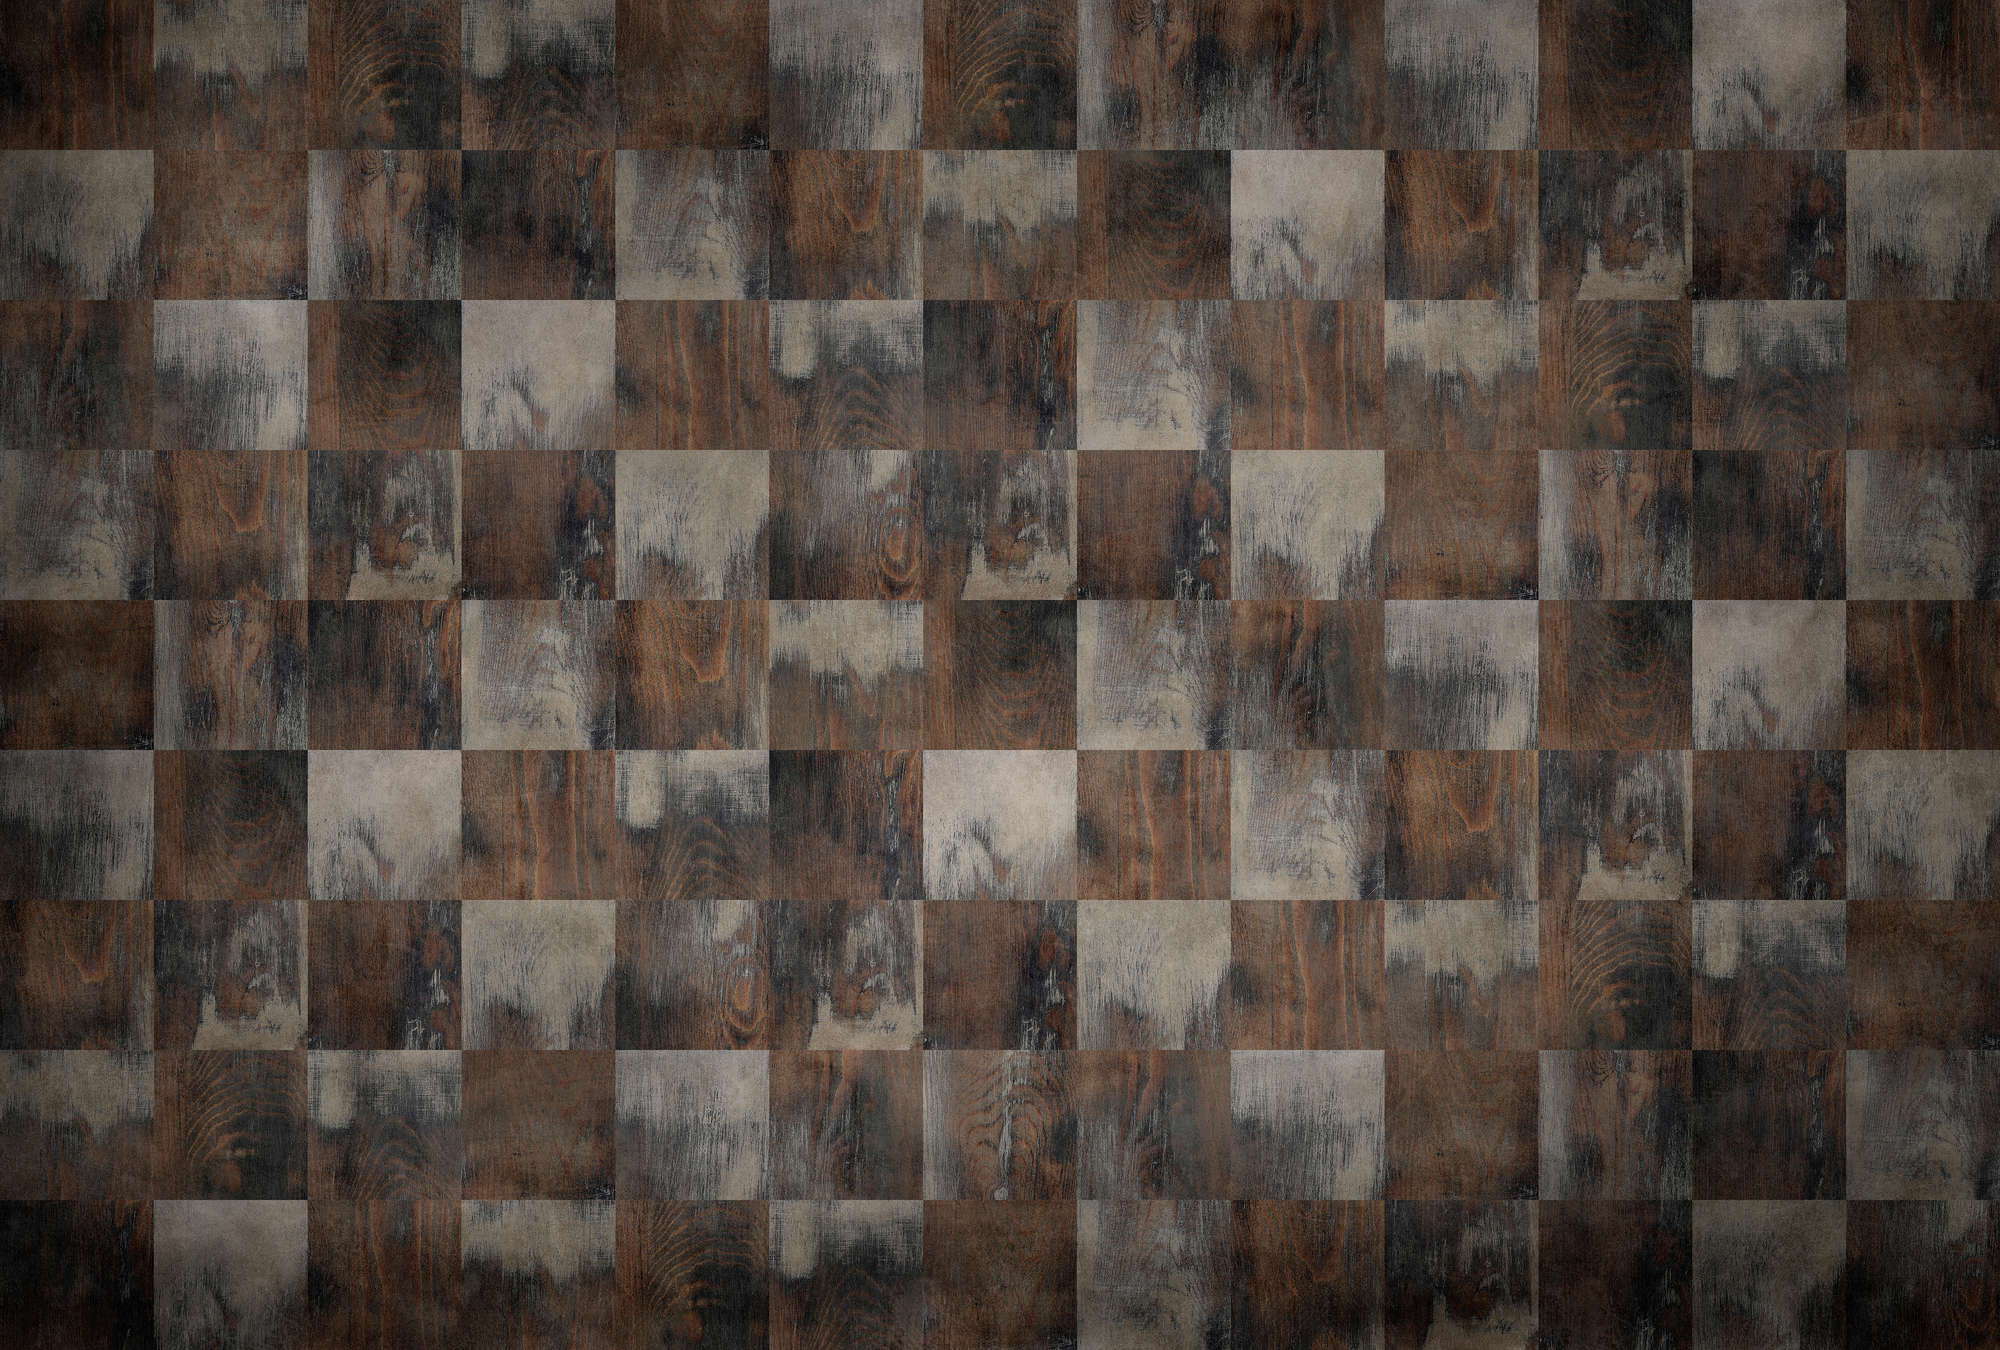             Factory 2 - Papier peint panoramique imitation bois motif échiquier, look usé
        